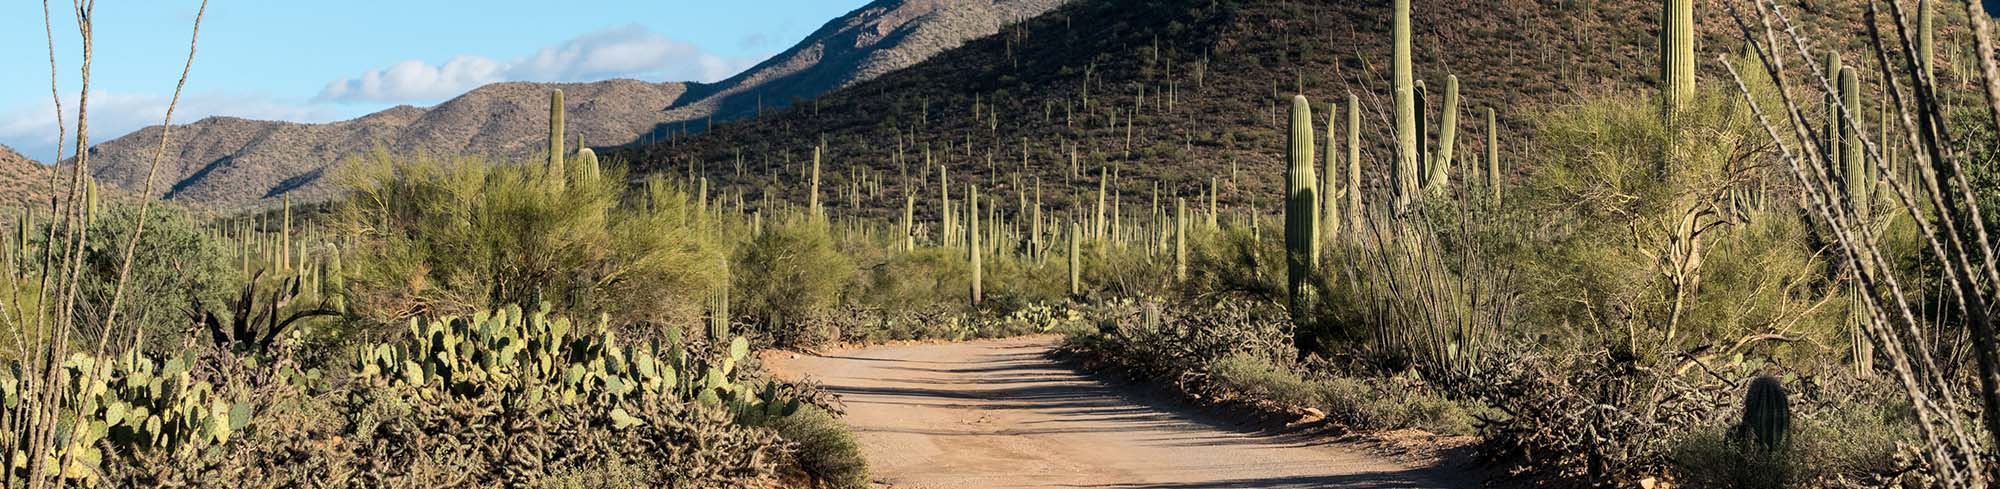 Desert road with cactus